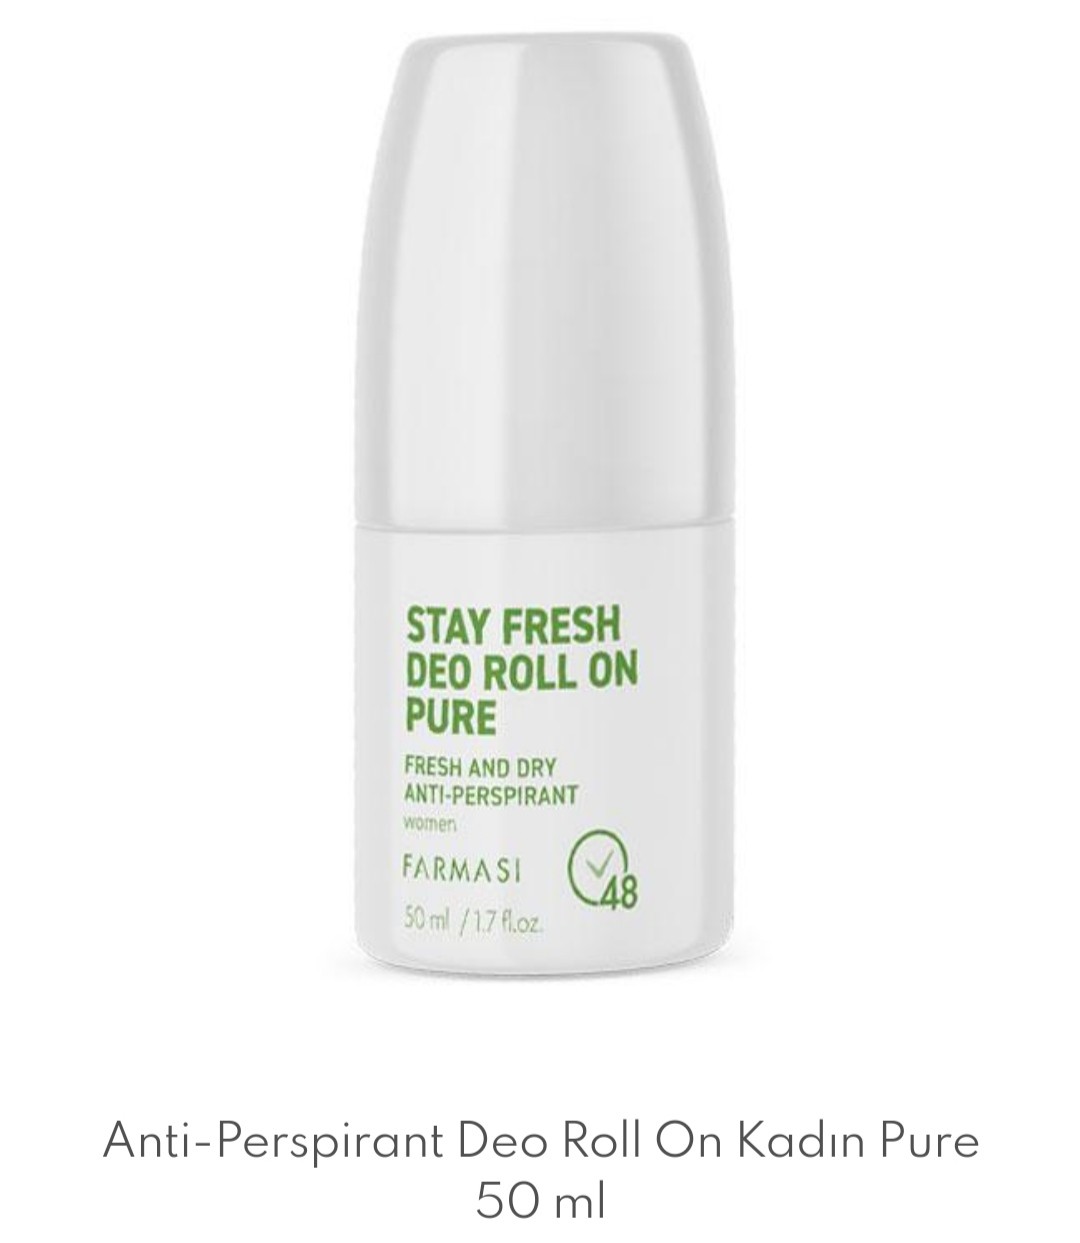 Anti-Perspirant Deo Roll On Kadın Pure 50 ml